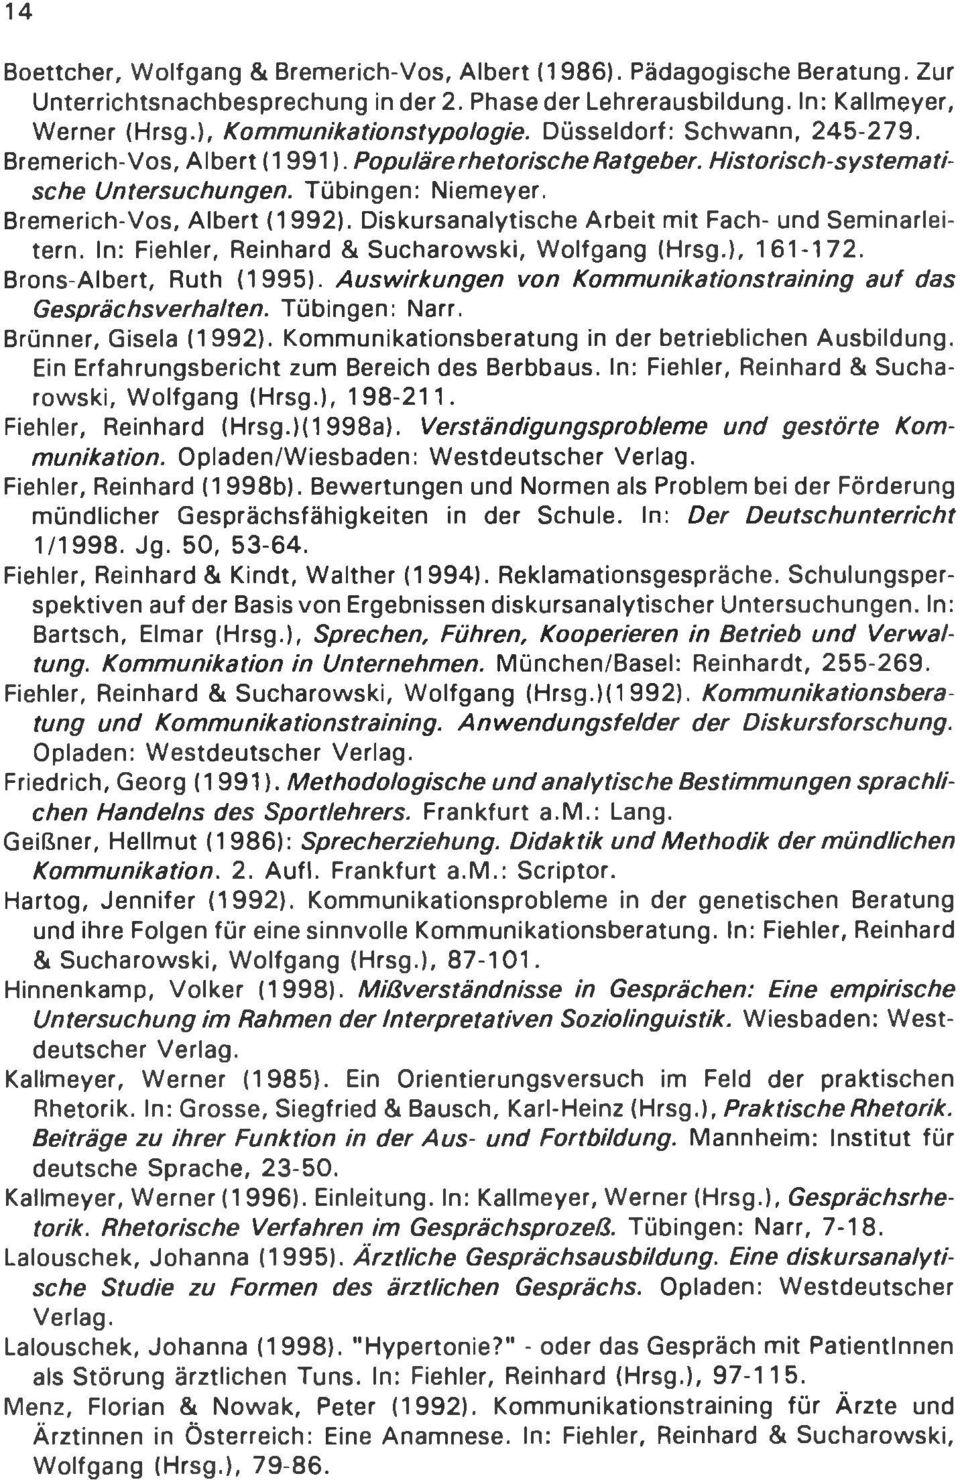 Bremerich-Vos, Albert (1992). Diskursanalytische Arbeit mit Fach- und Seminarleitern. In: Fiehler, Reinhard & Sucharowski, Wolfgang (Hrsg.), 161-172. Brons-Albert, Ruth (1995).